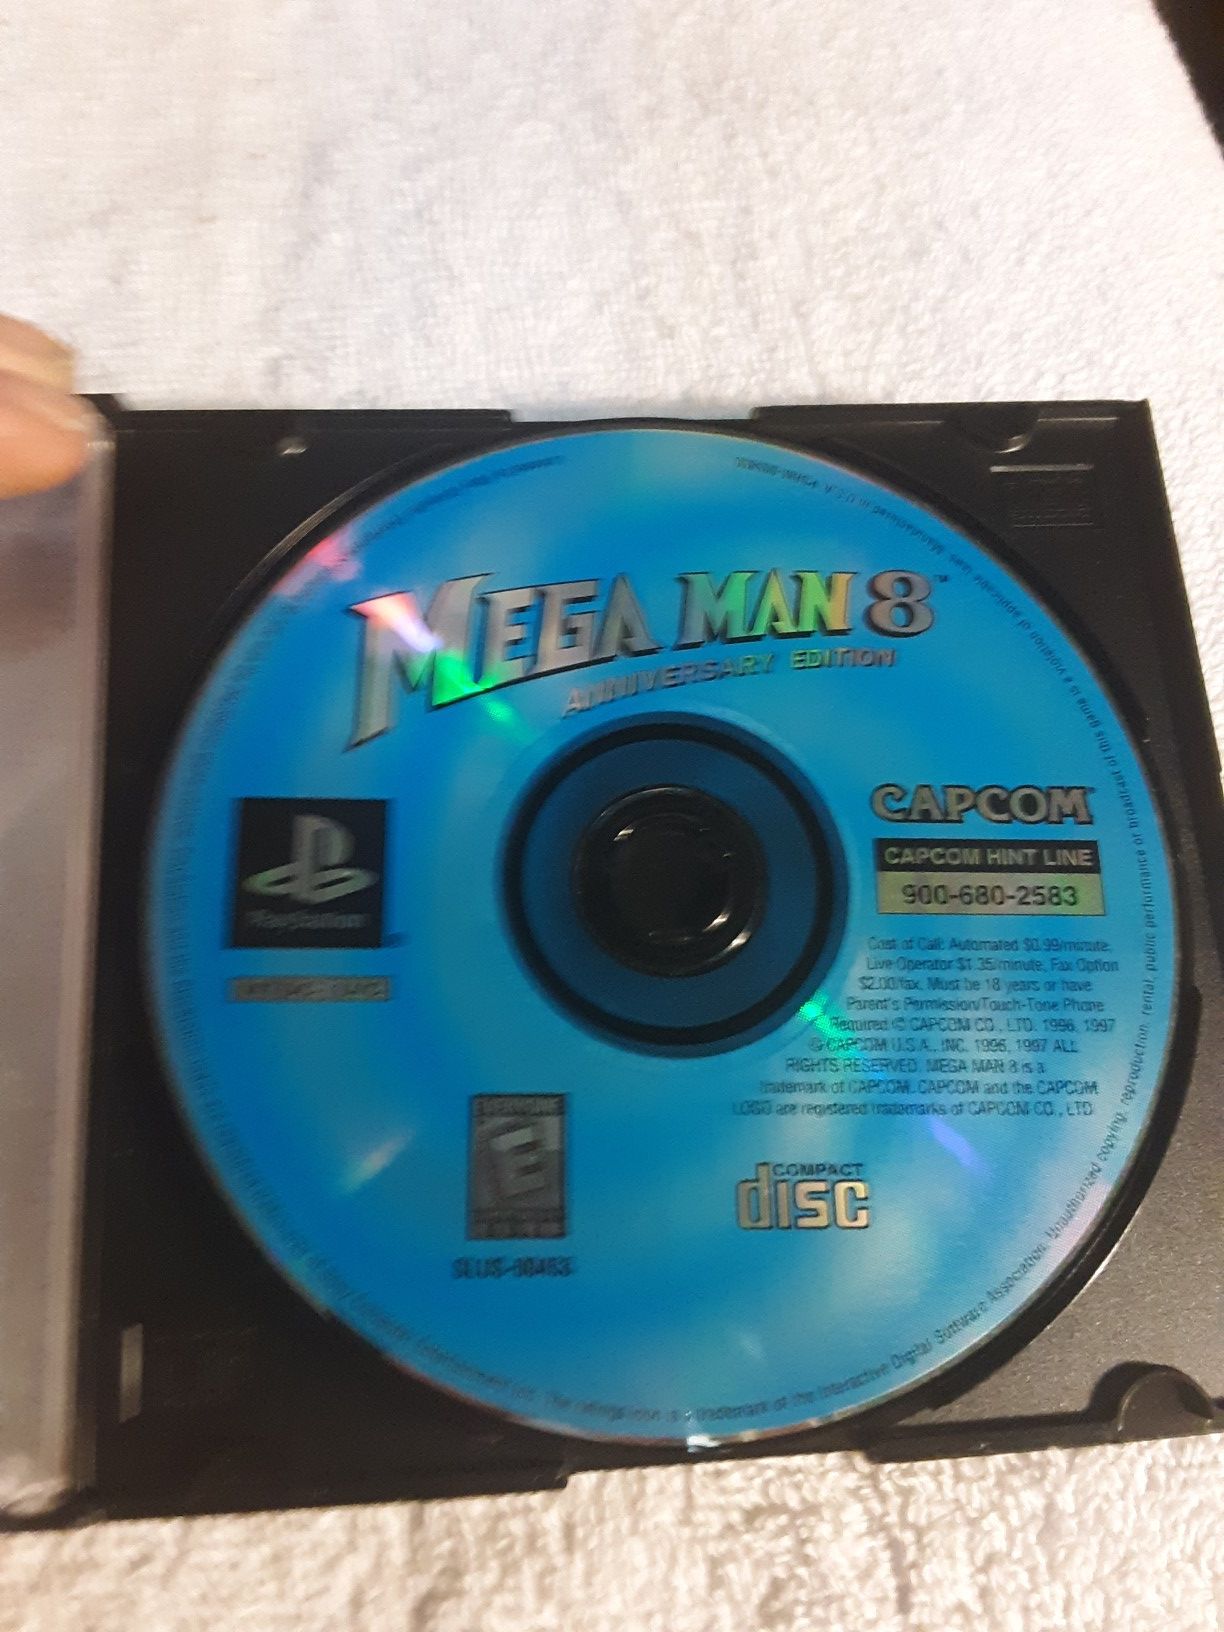 Mega ManX4 & Mega Man 8 ps1